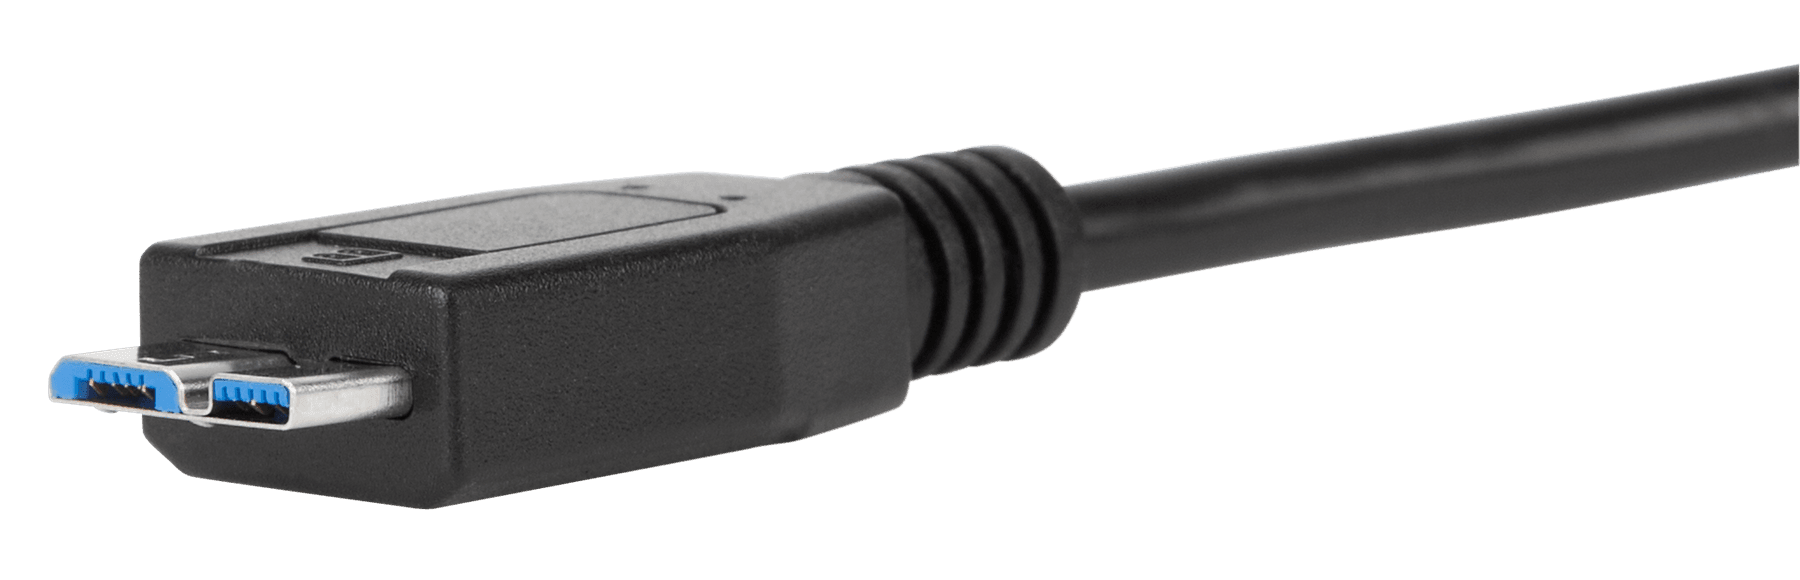 UC-020-MICRO, Cavo USB corto - Micro USB Quick Charge 3.0, 30cm, Trasferimento dati, Android Auto